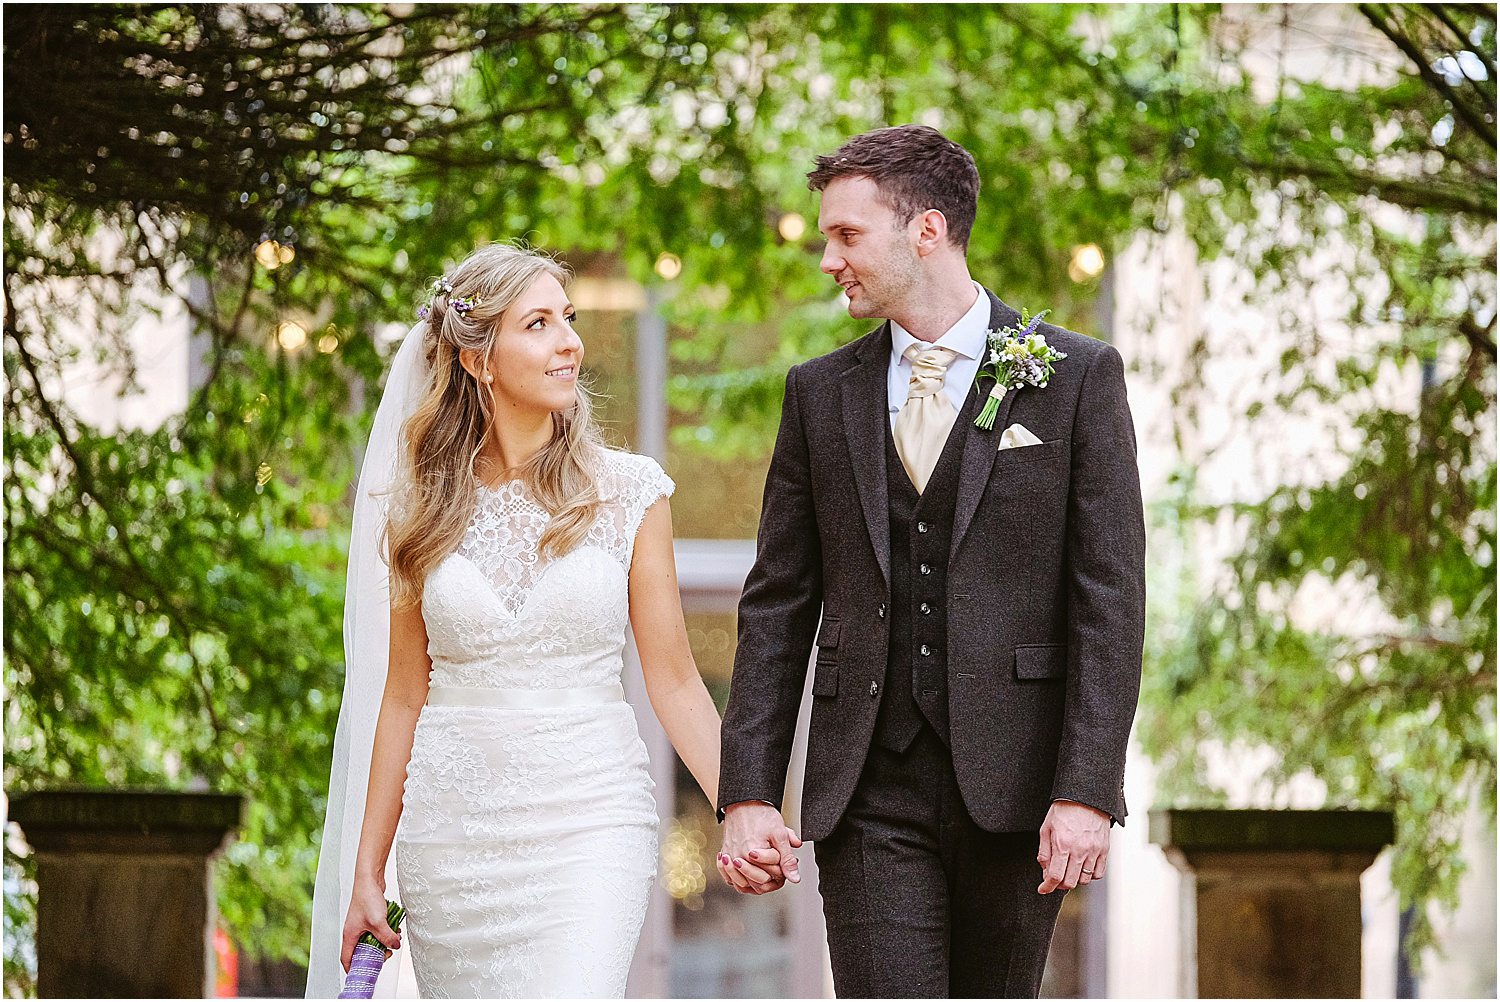 Beamish Hall wedding photography - Laura and Richard_0076.jpg